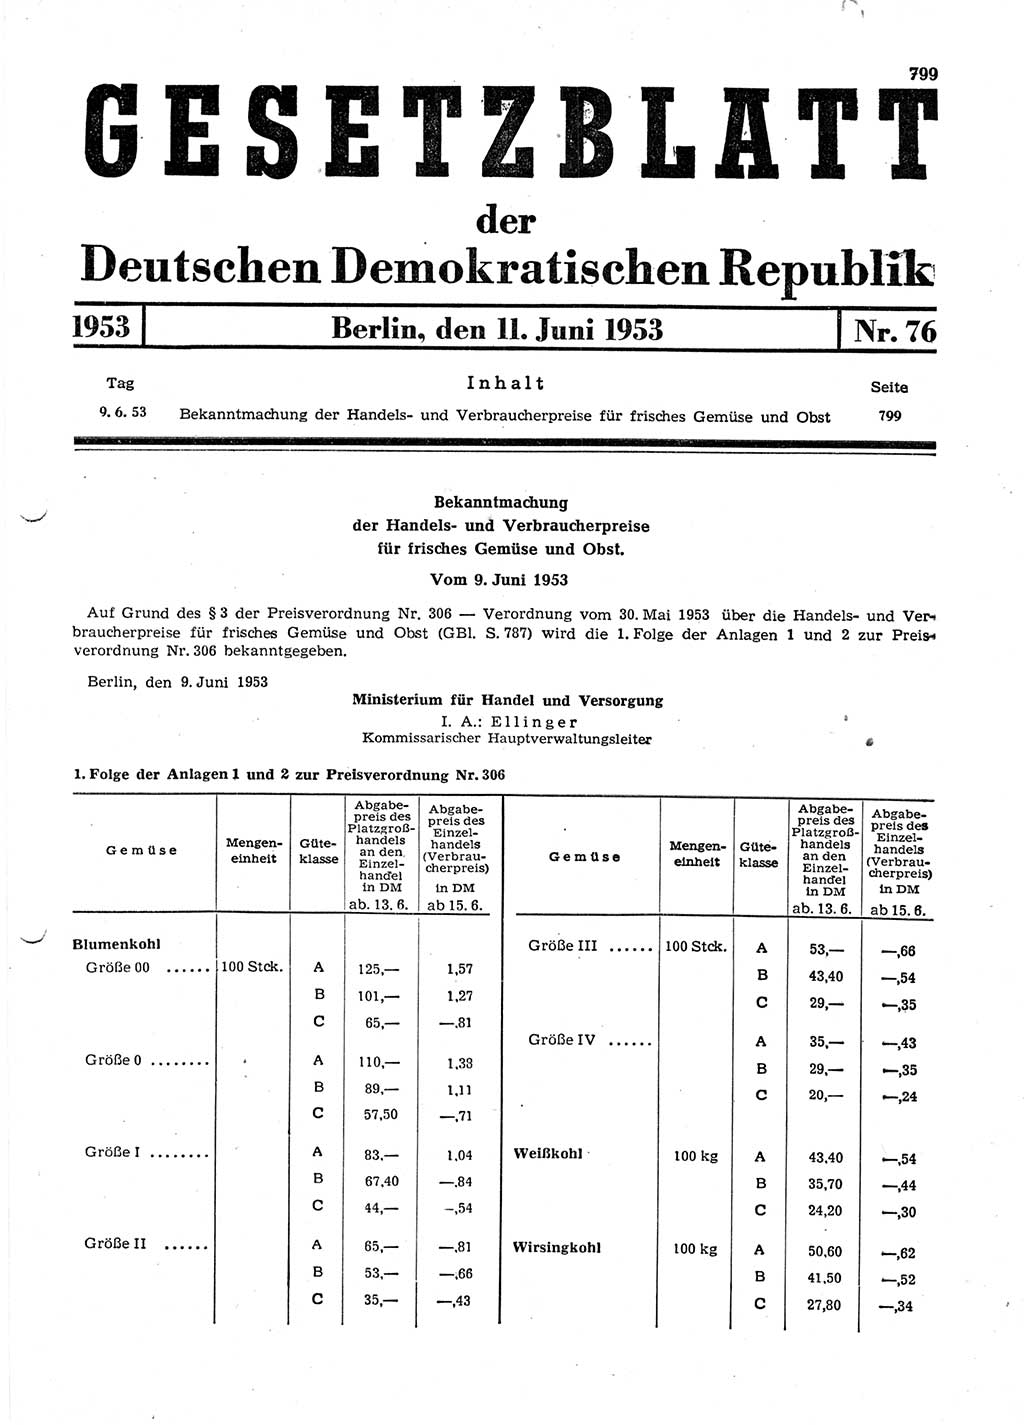 Gesetzblatt (GBl.) der Deutschen Demokratischen Republik (DDR) 1953, Seite 799 (GBl. DDR 1953, S. 799)